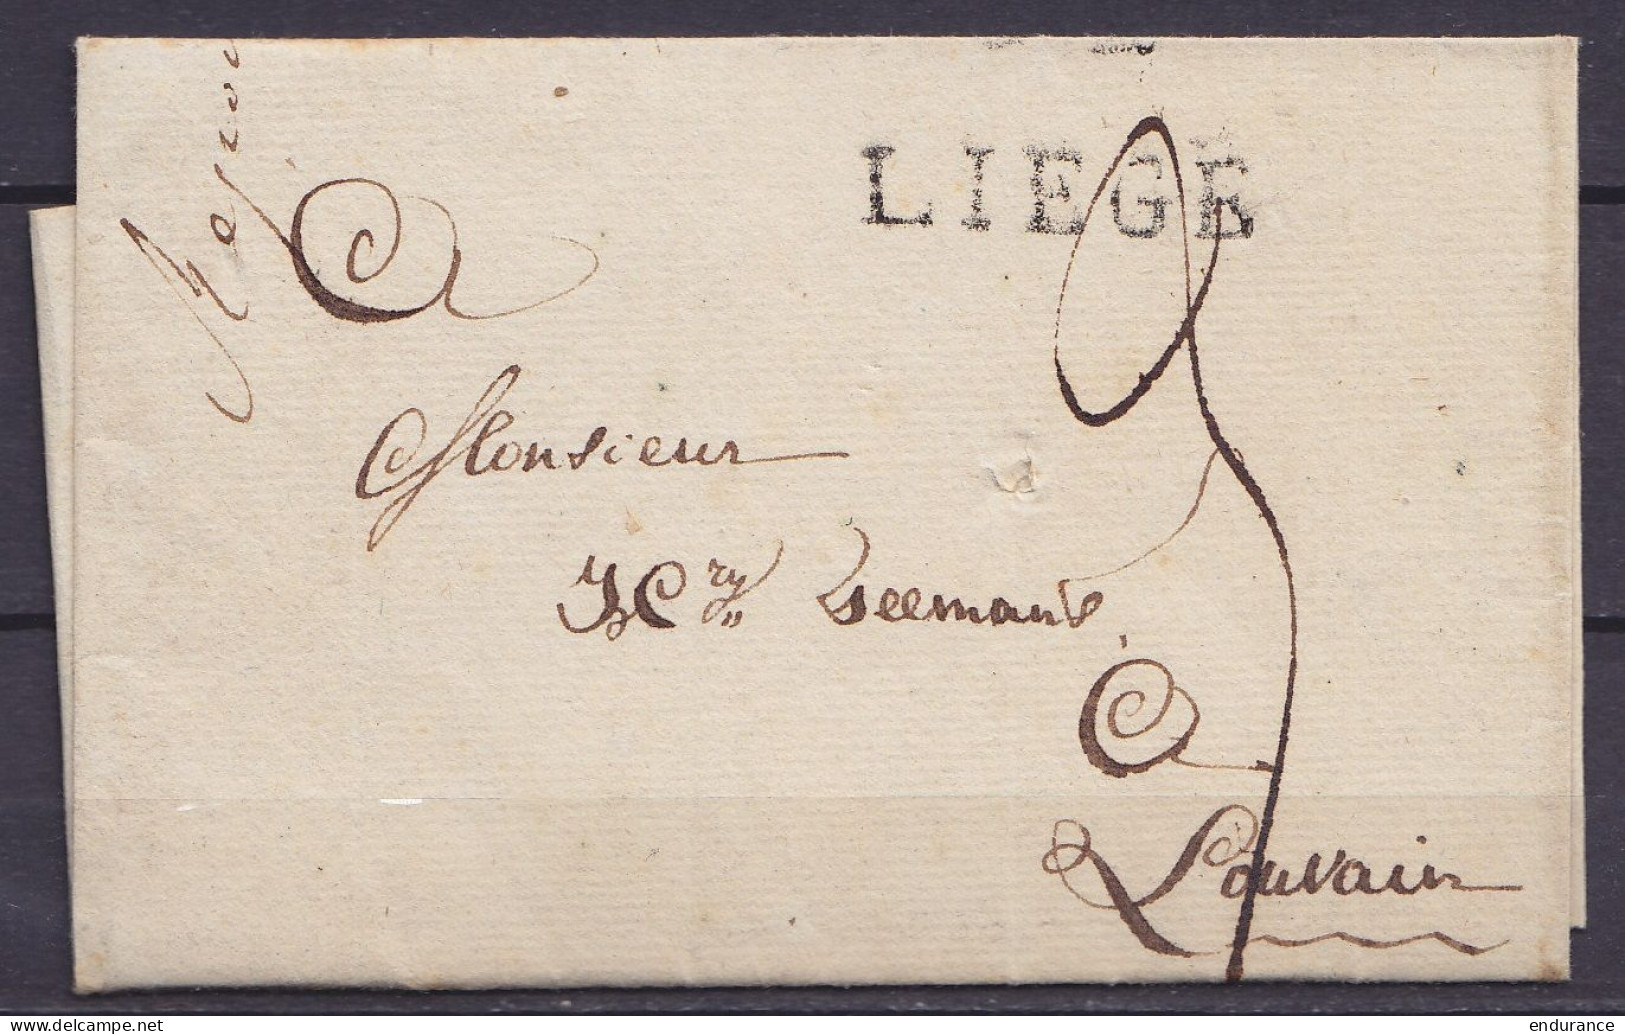 LSC (sans Texte) De LIEGE 29 Juillet 1815 Pour LOUVAIN - Griffe "LIEGE" - Port "3" - 1815-1830 (Hollandse Tijd)